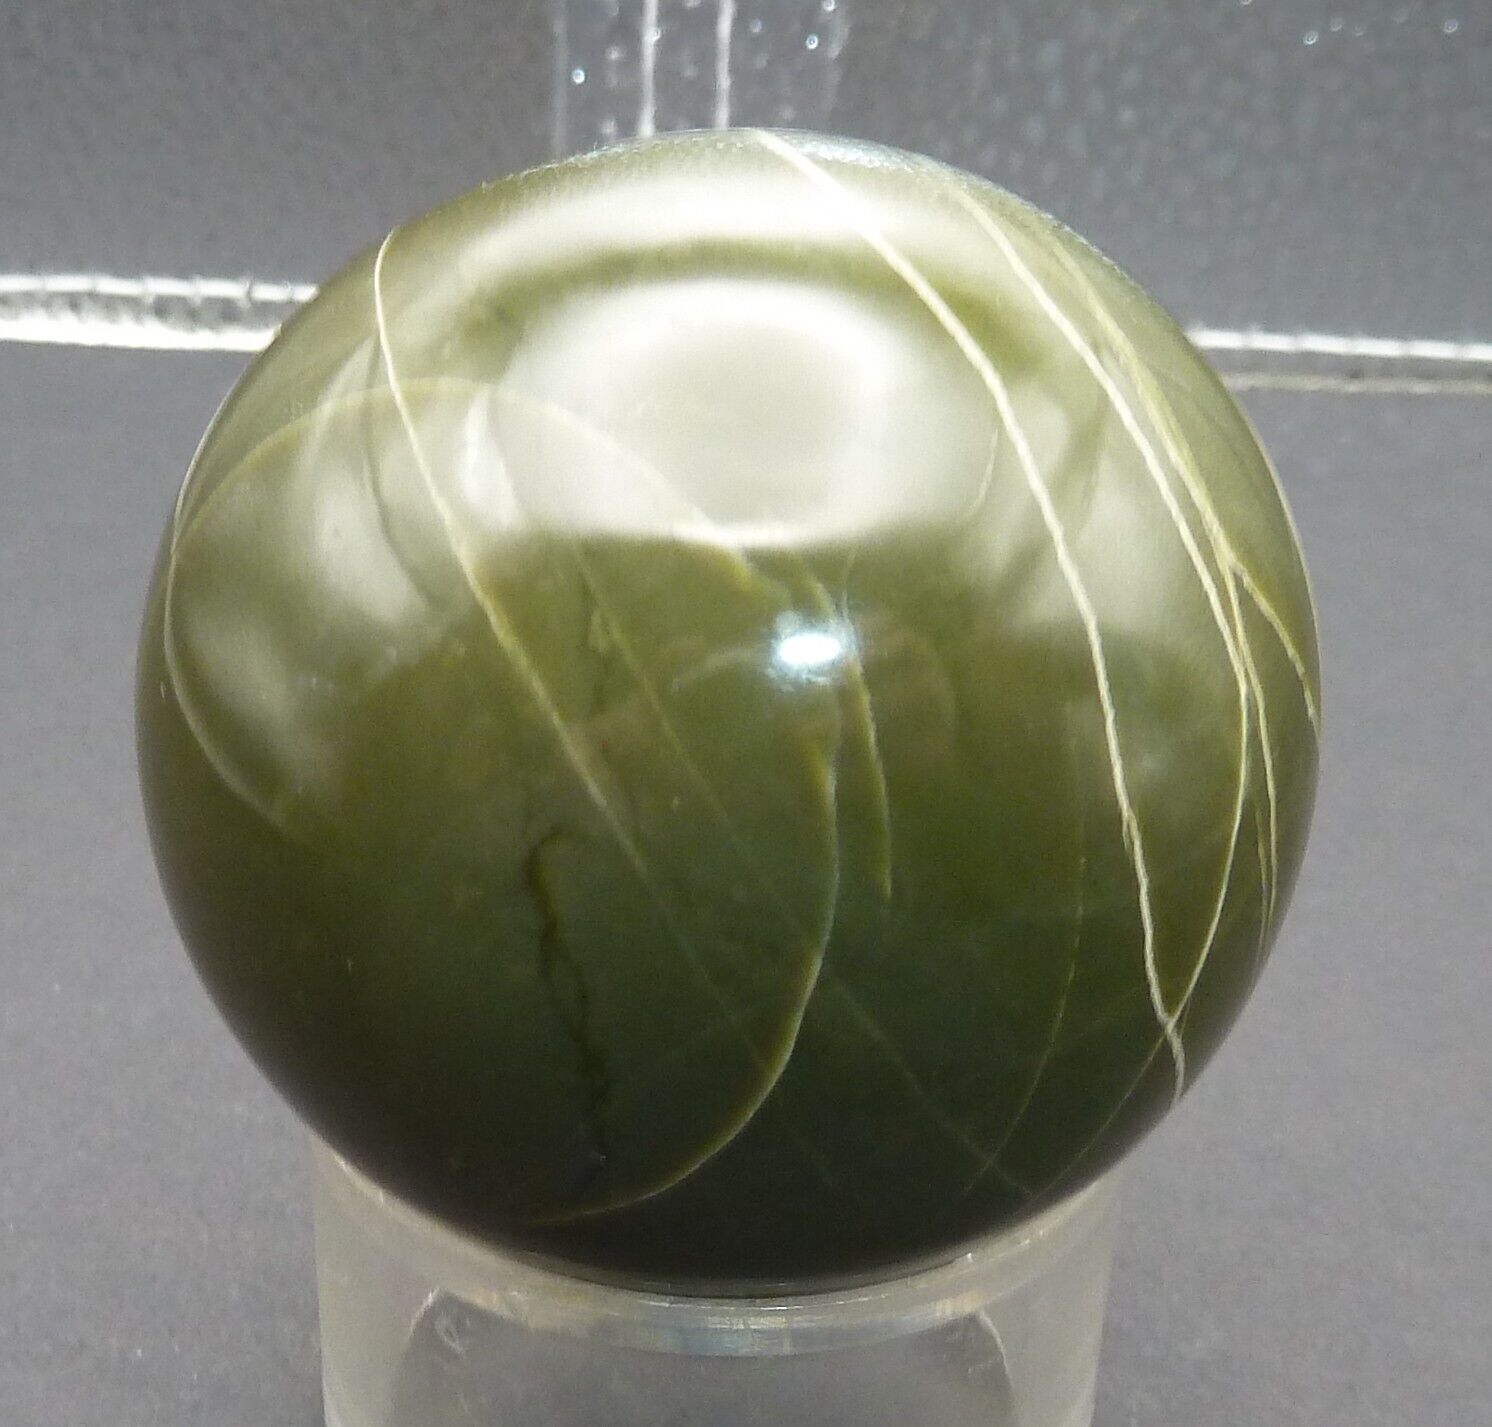 Serpentine Sphere Gemstone Ball w/ Stand - Peru - 56mm